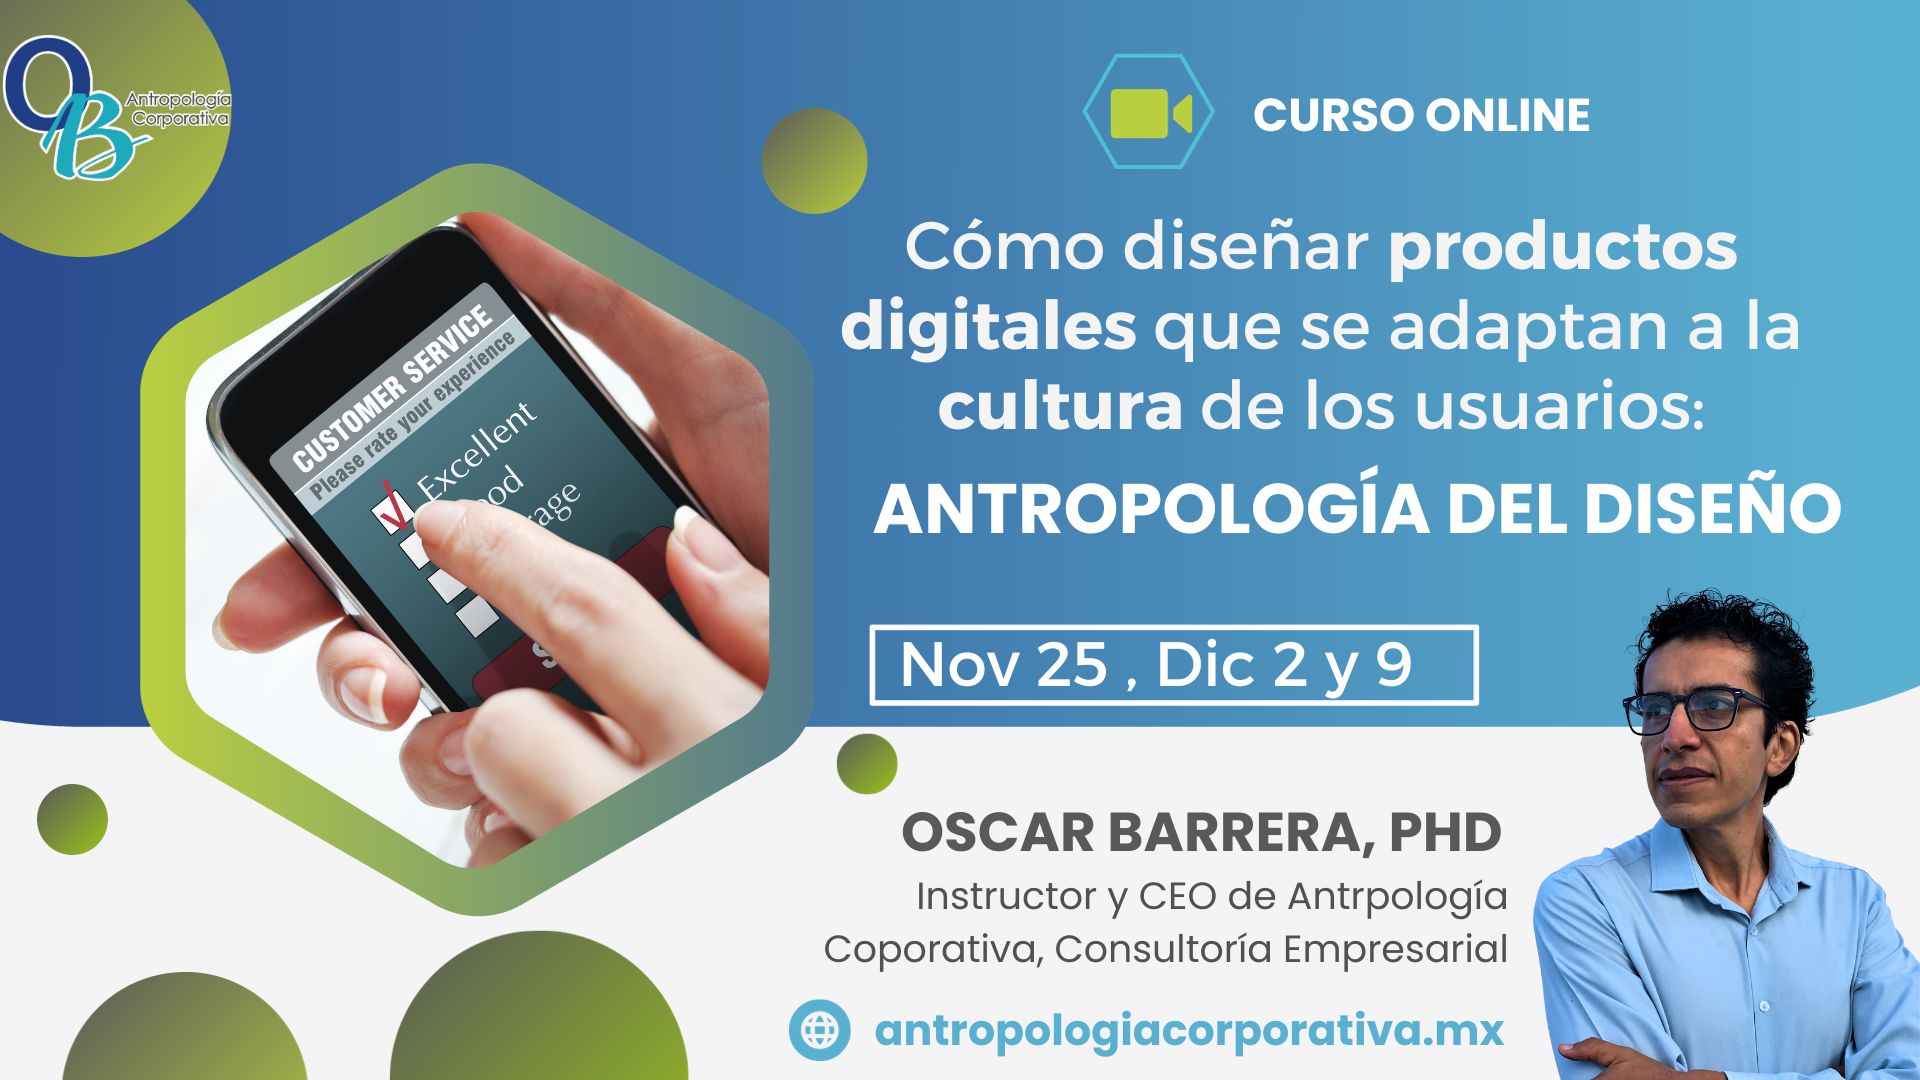 Curso Online Cómo diseñar productos digitales que se adapten a la cultura de los usuarios: Antropología del Diseño